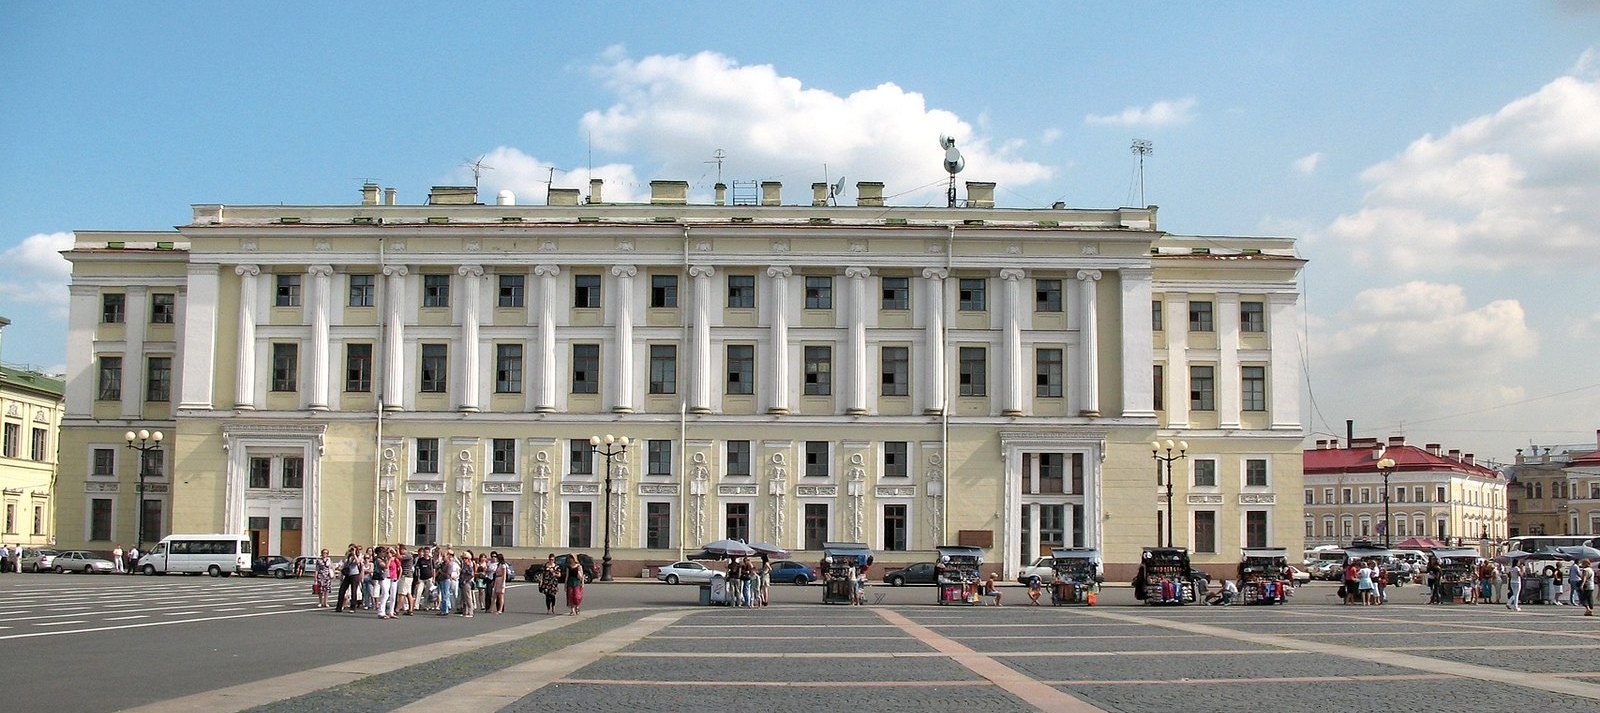 Здание штаба Гвардейского корпуса Дворцовой площади в Санкт-Петербурге